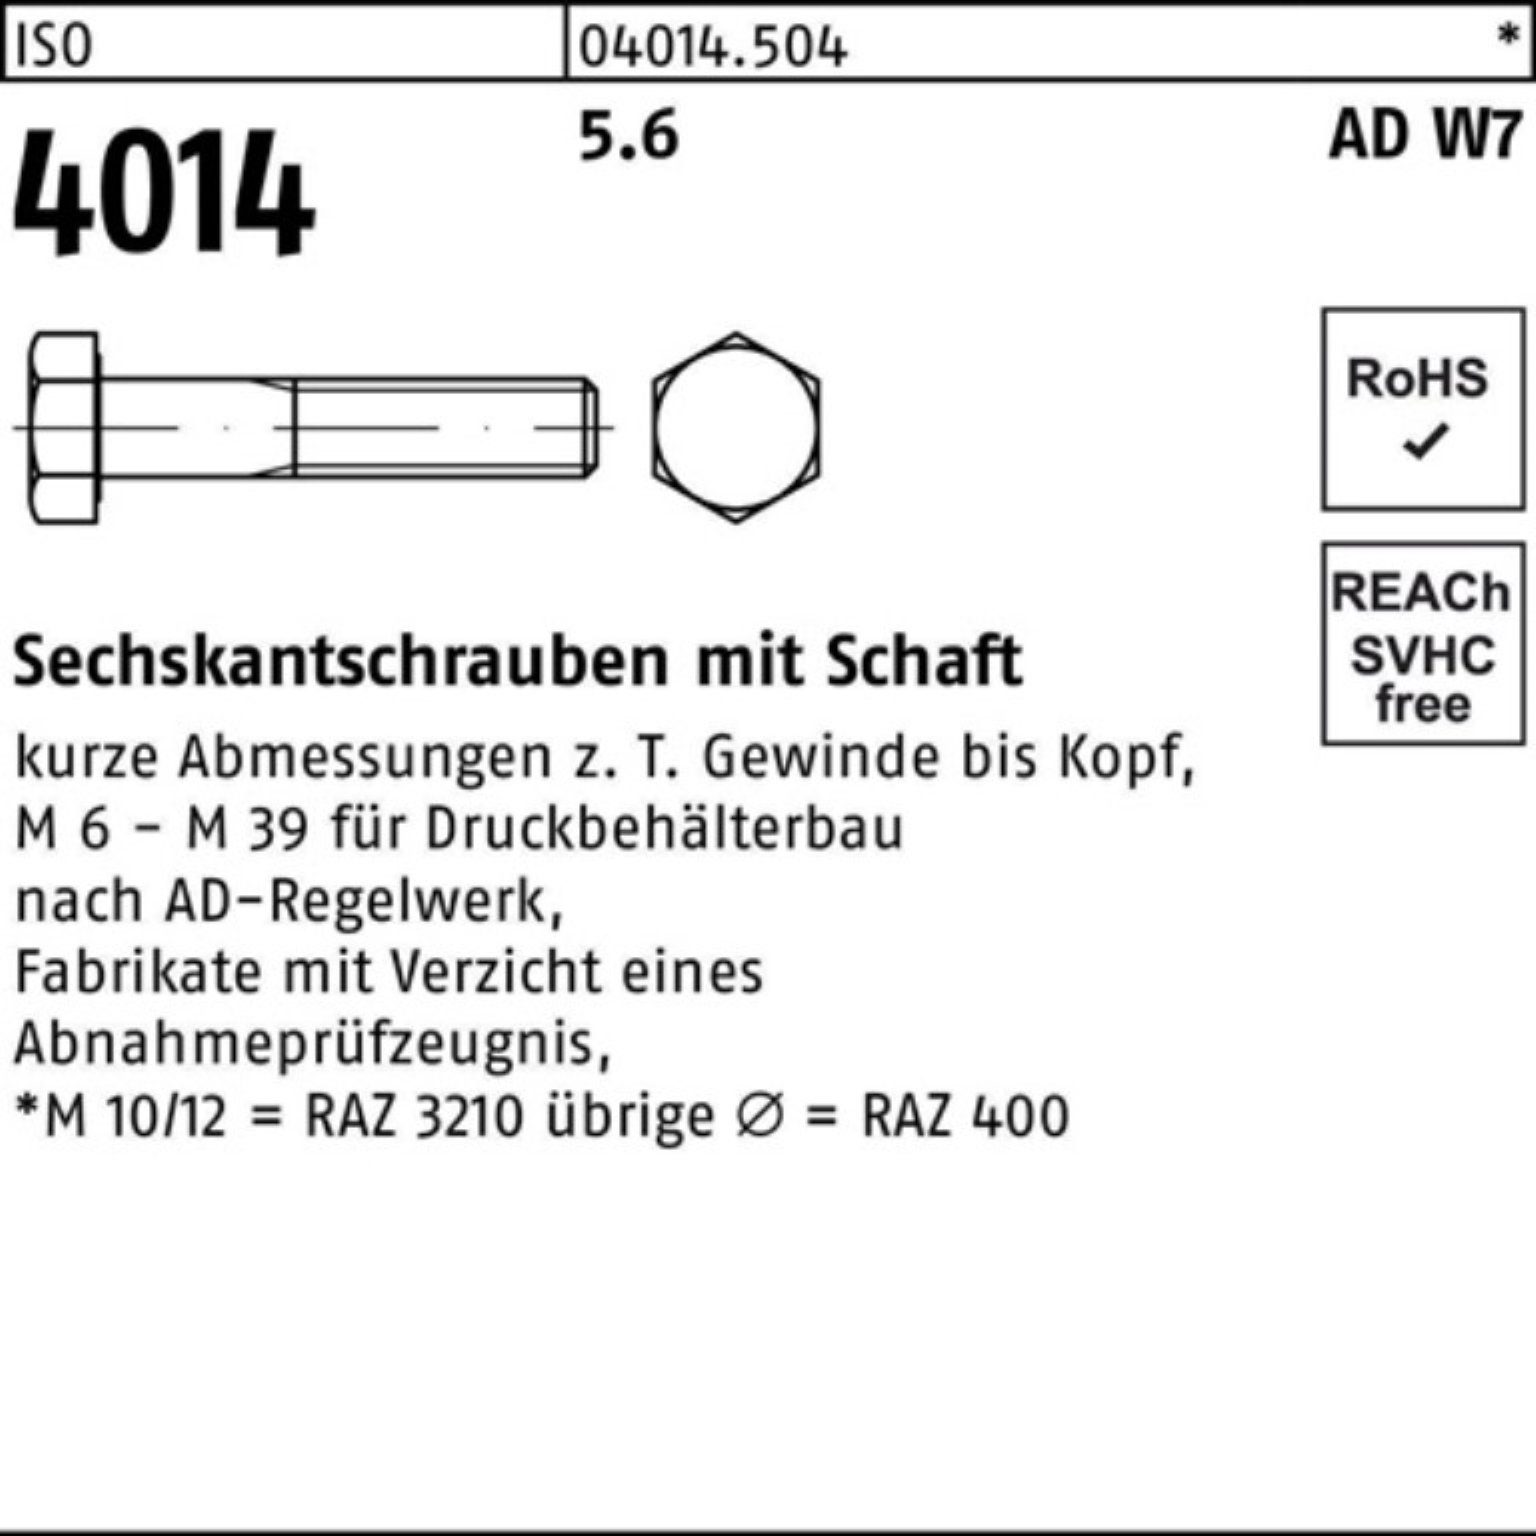 Bufab Sechskantschraube 100er Pack Sechskantschraube Stück 10 W7 Schaft 5.6 M22x 4014 100 ISO